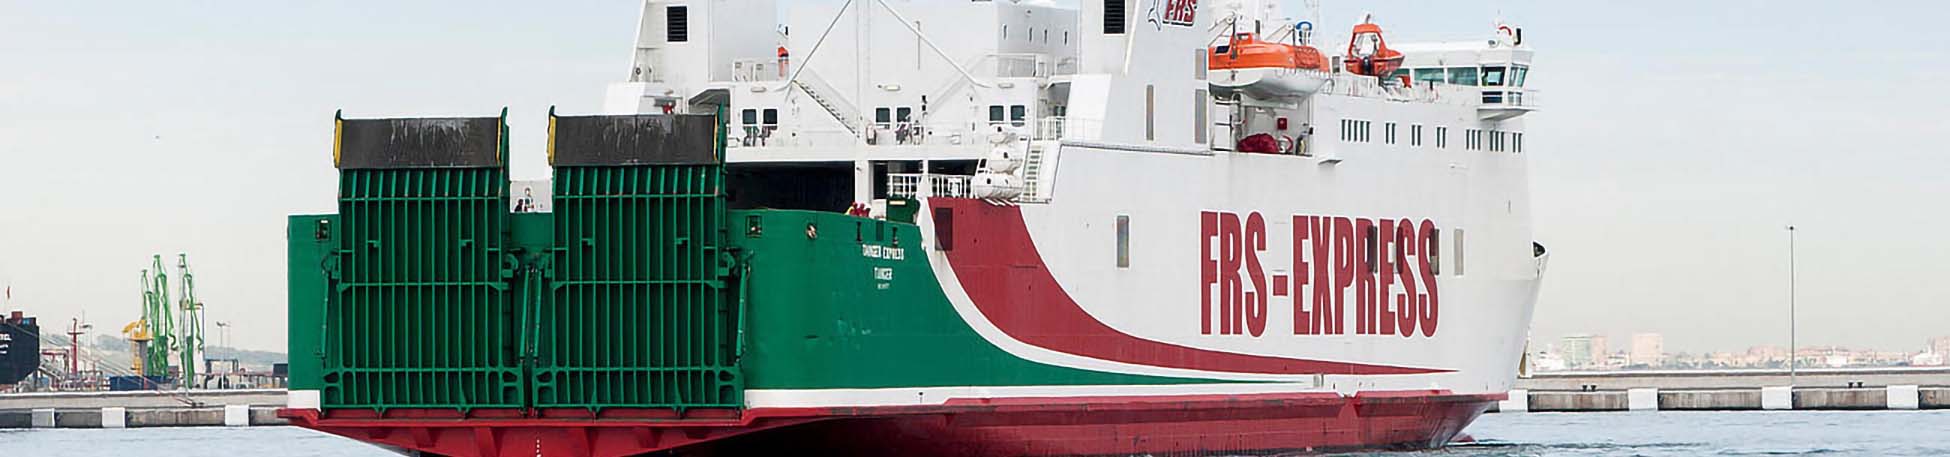 Imatge recurs del port de destinació Tànger Med per a la ruta en ferry Algesires - Tànger Med